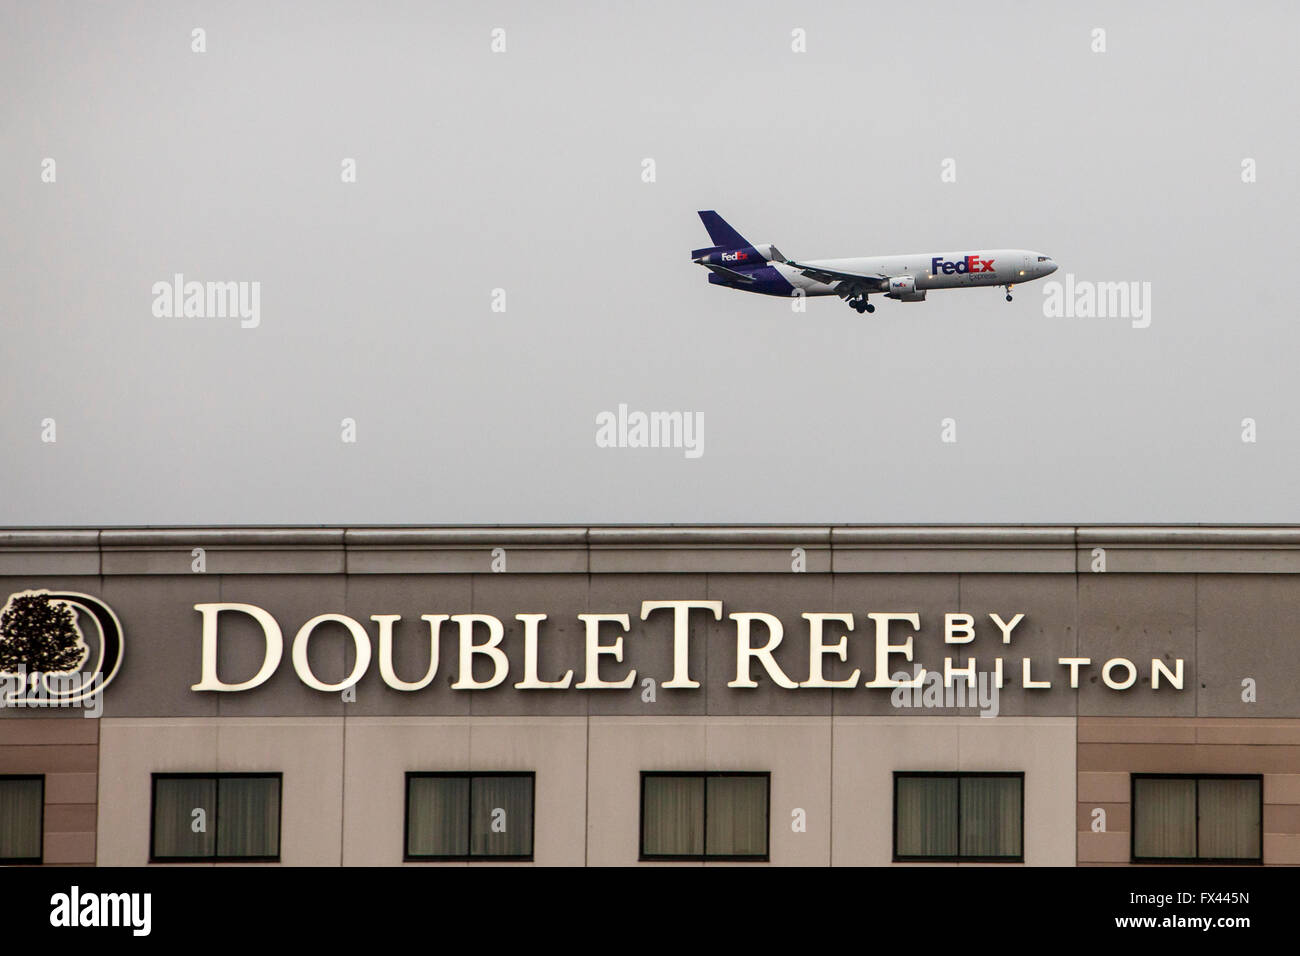 En Rosemont, Illinois - un chorro de FedEx por encima de un Hotel DoubleTree, en la aproximación final al aeropuerto de O'Hare. Foto de stock